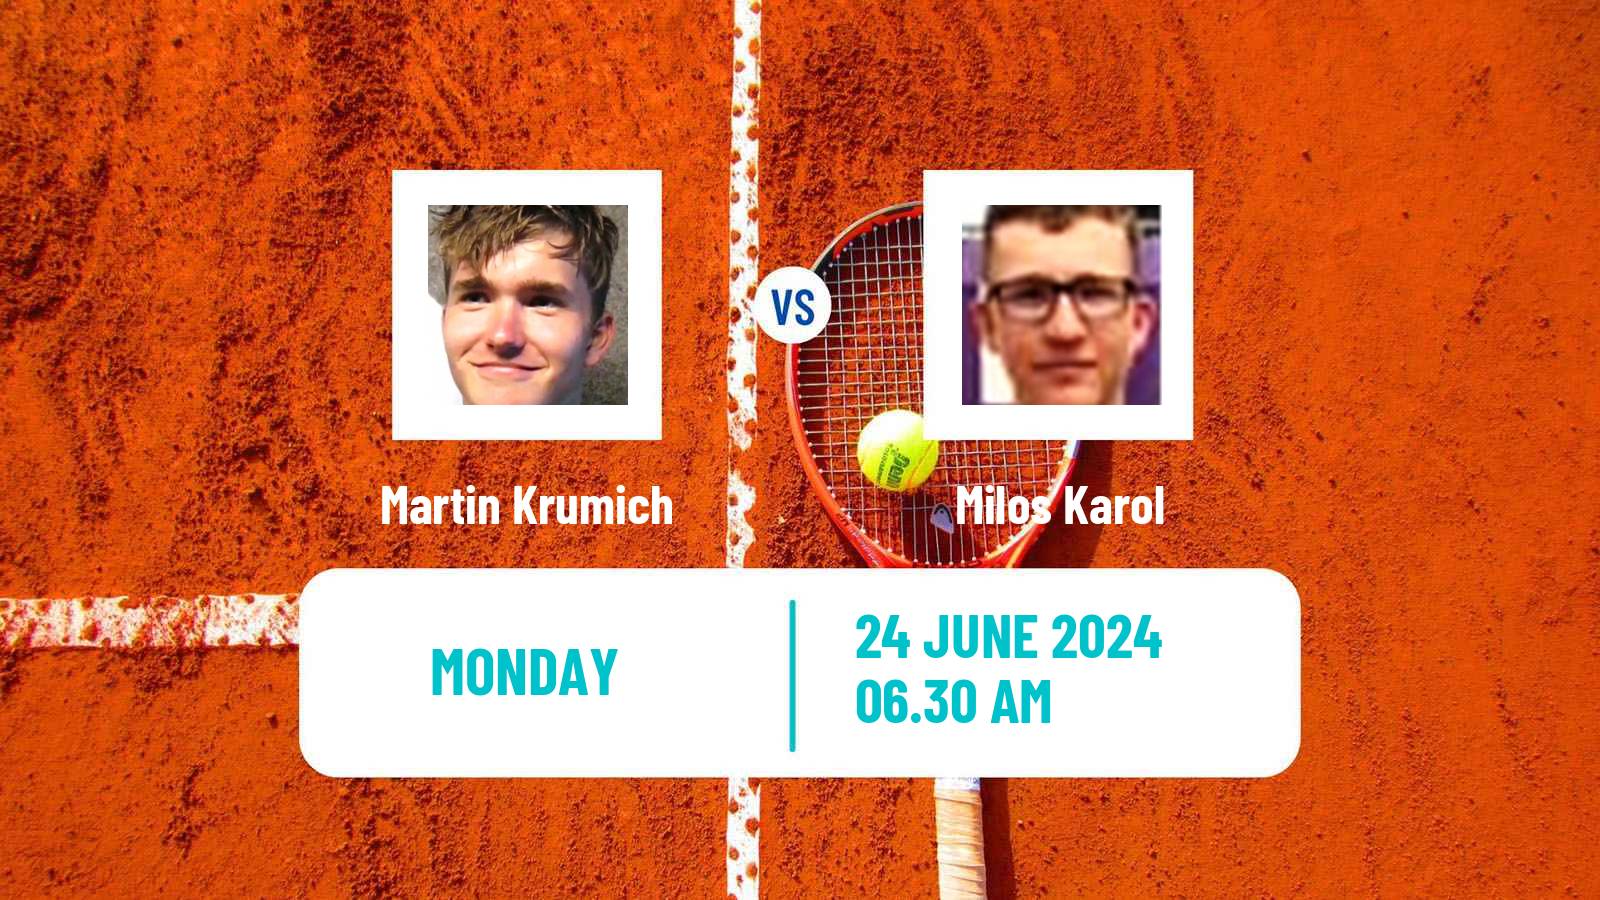 Tennis ITF M25 Satu Mare Men 2024 Martin Krumich - Milos Karol